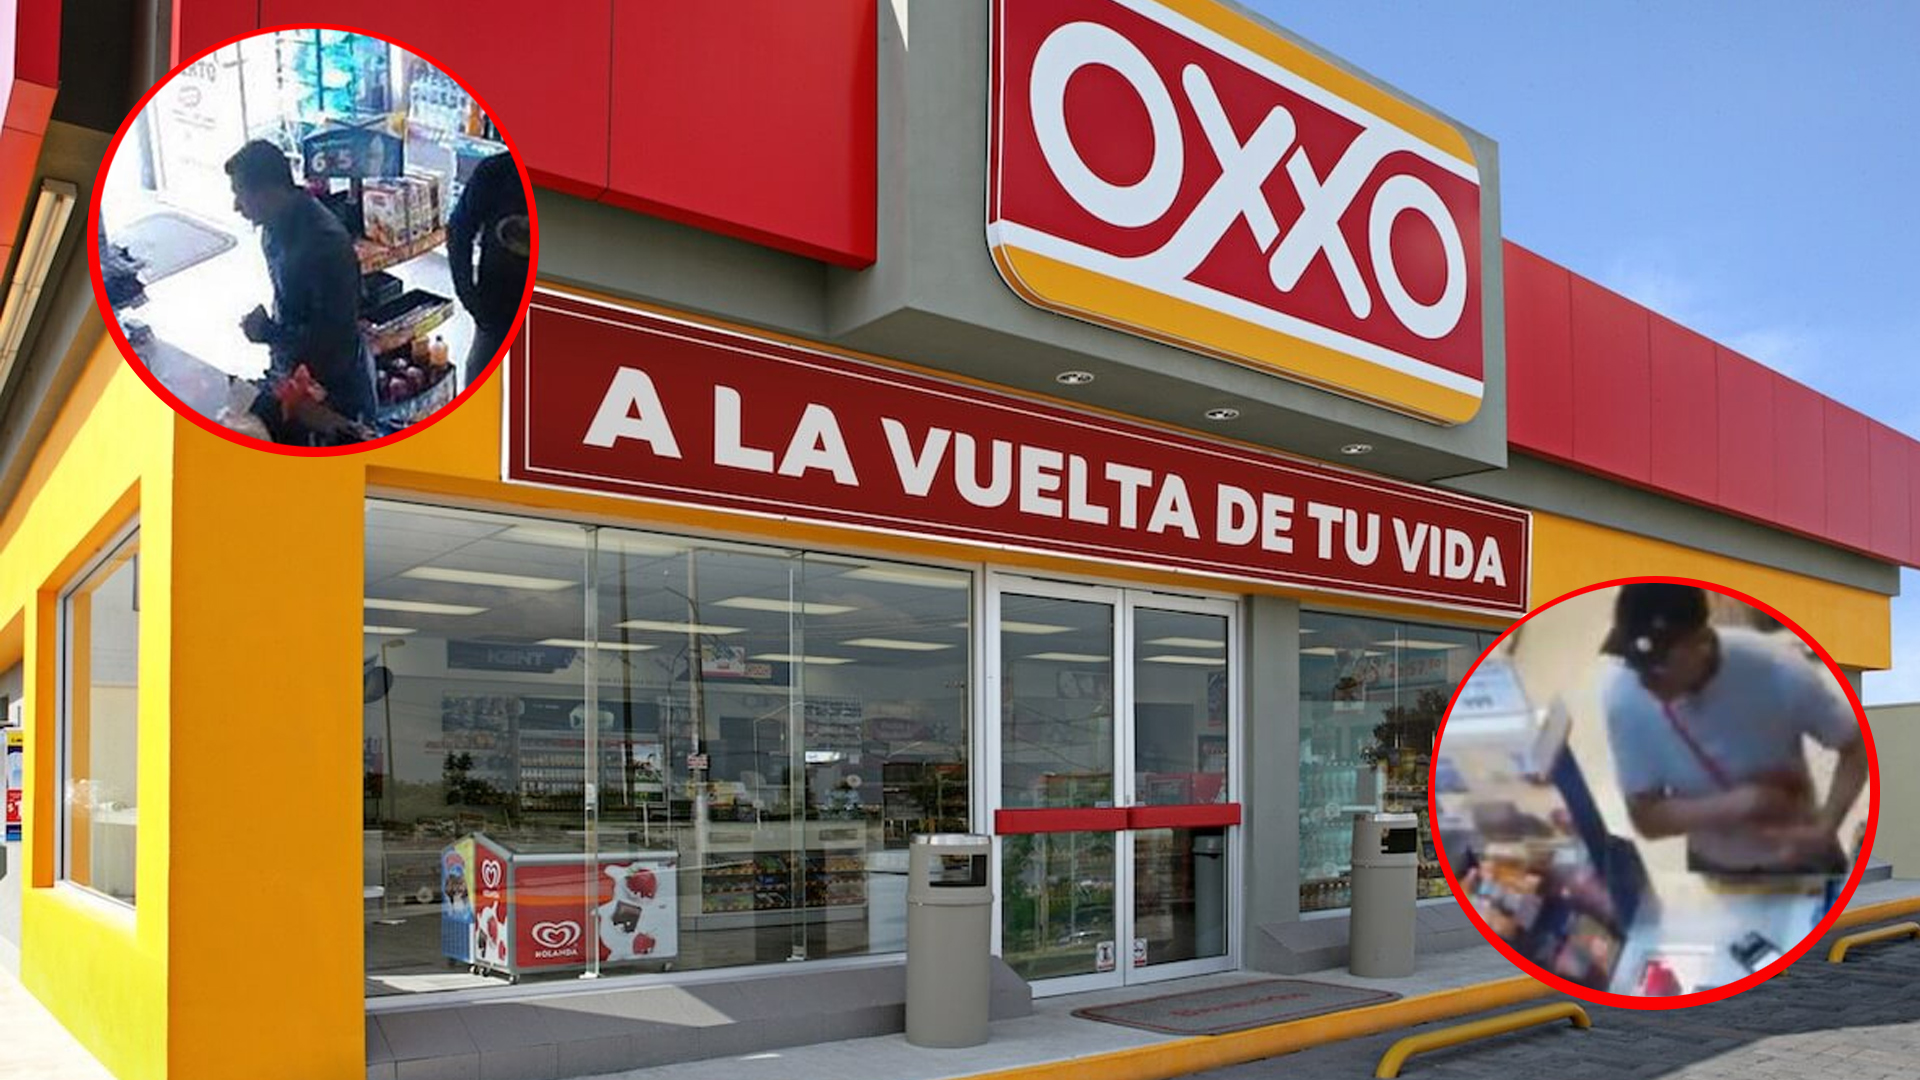 OXXOS, PRINCIPAL BLANCO DE LA DELINCUENCIA EN EL CENTRO DE CUERNAVACA